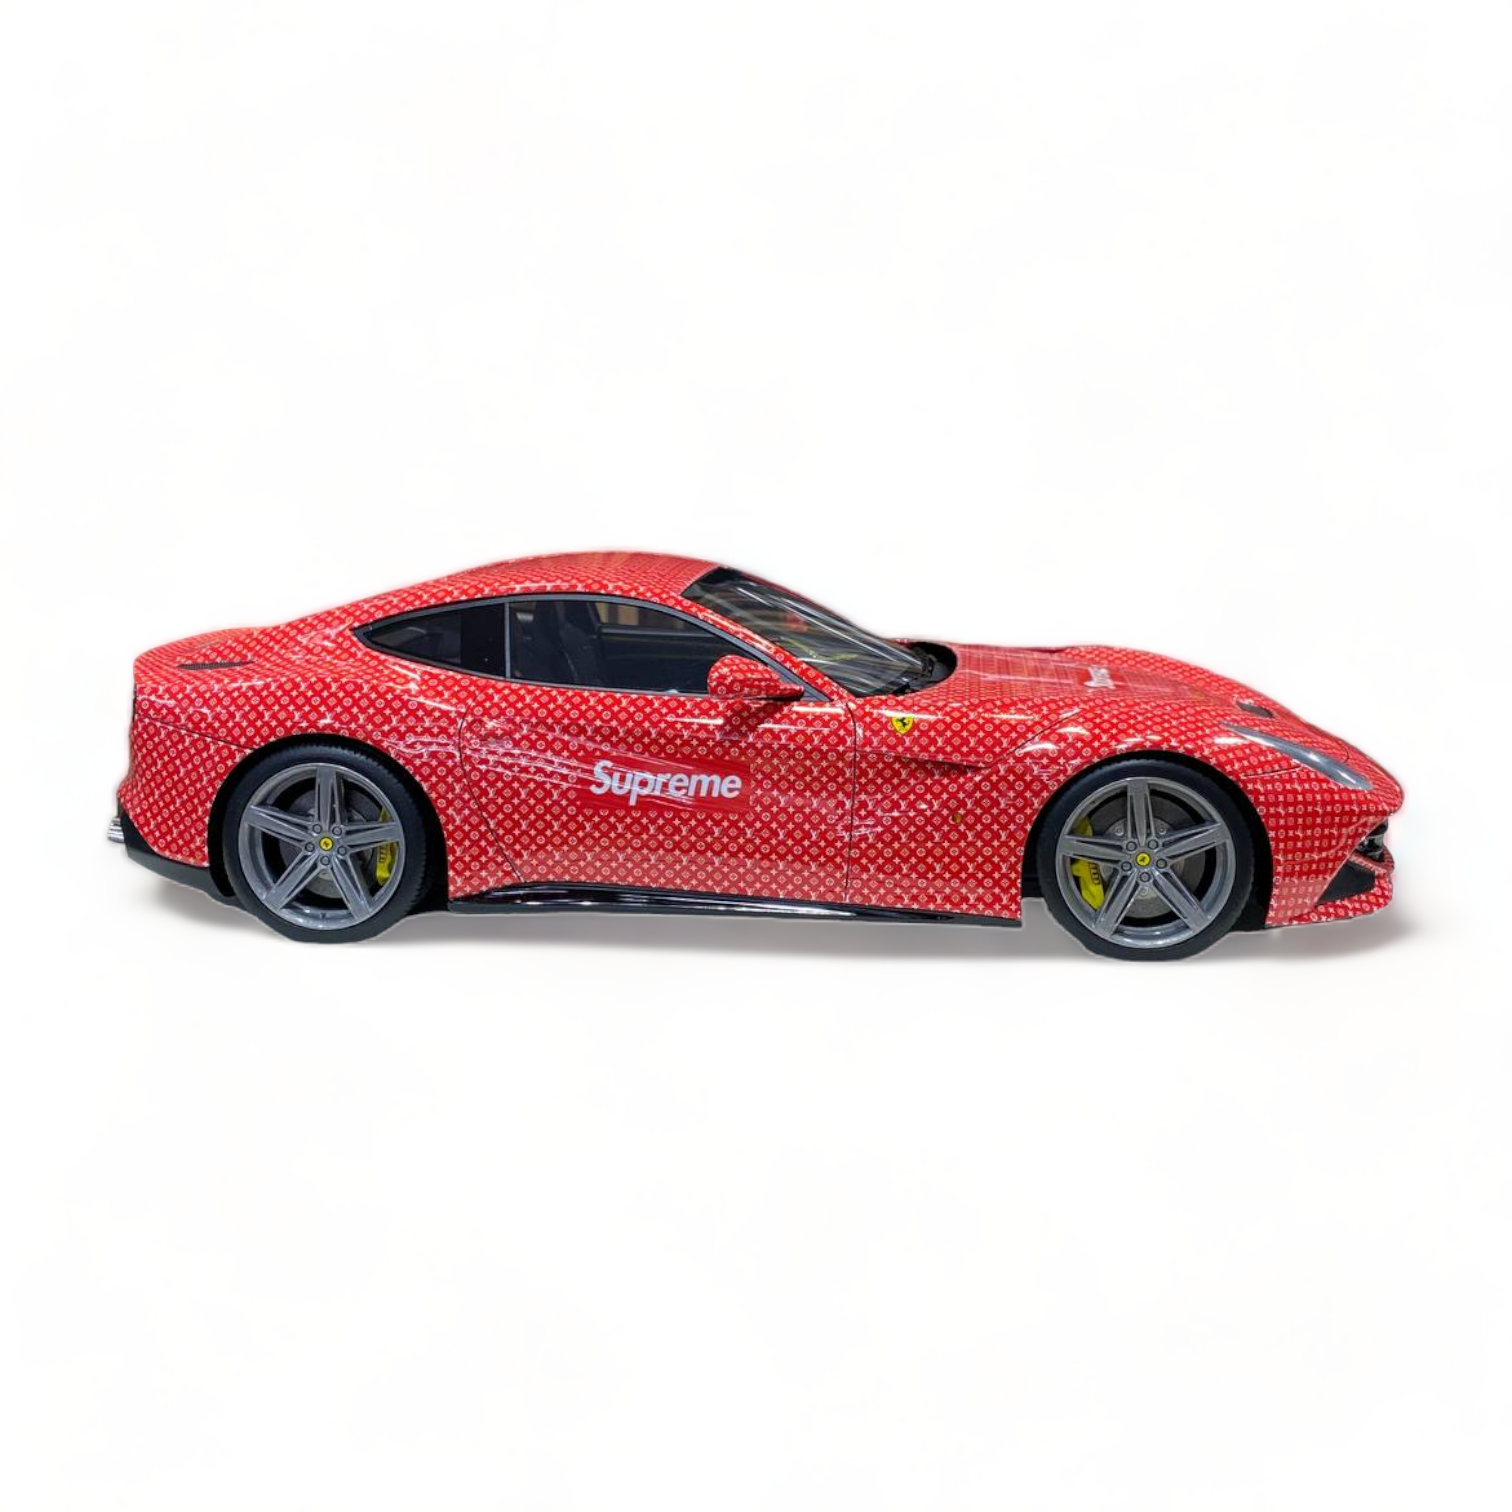 Supreme x Louis Vuitton Ferrari F12 For Sale